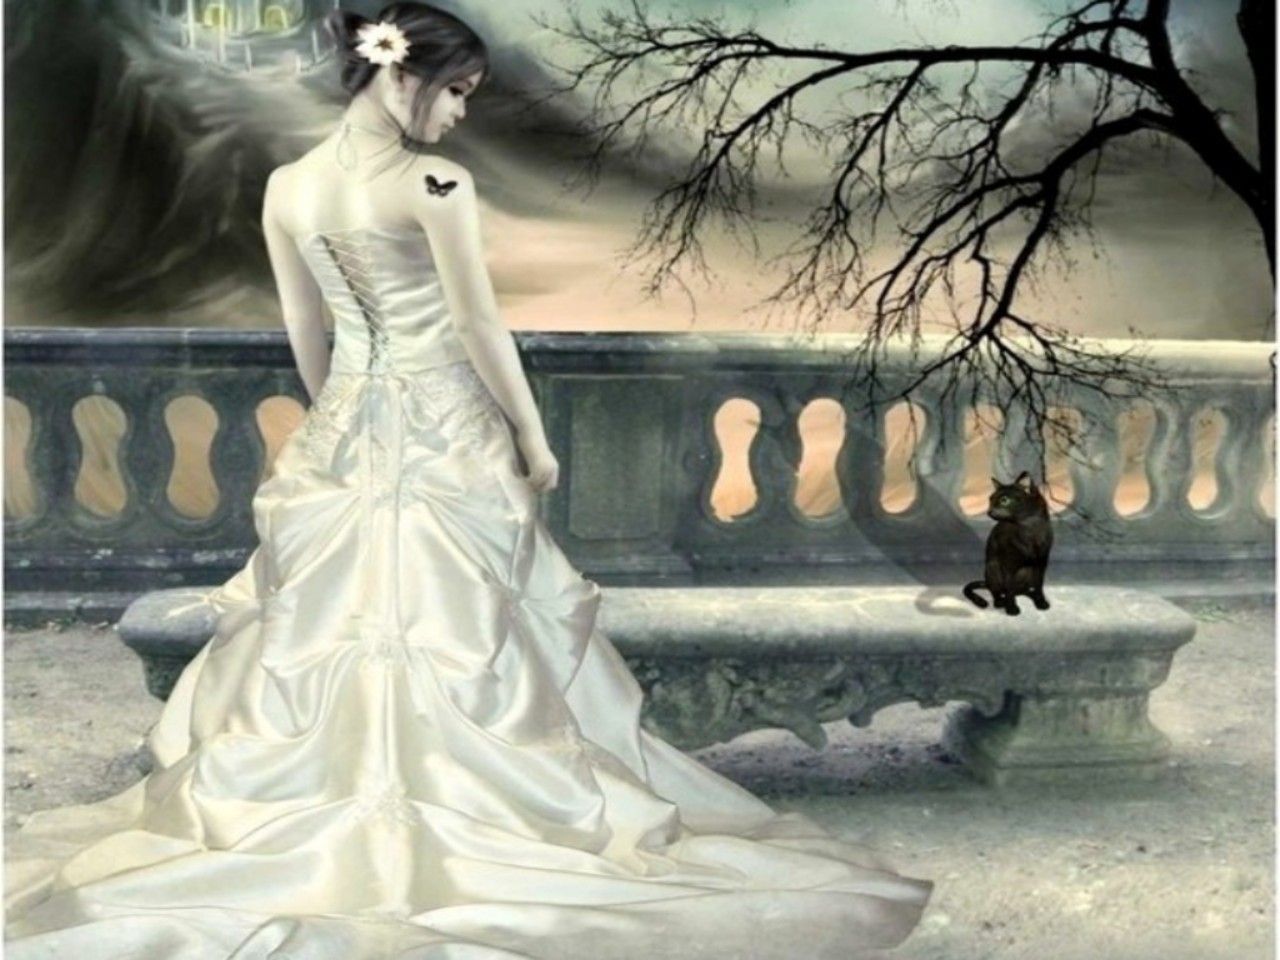 The White Wedding Dress Image